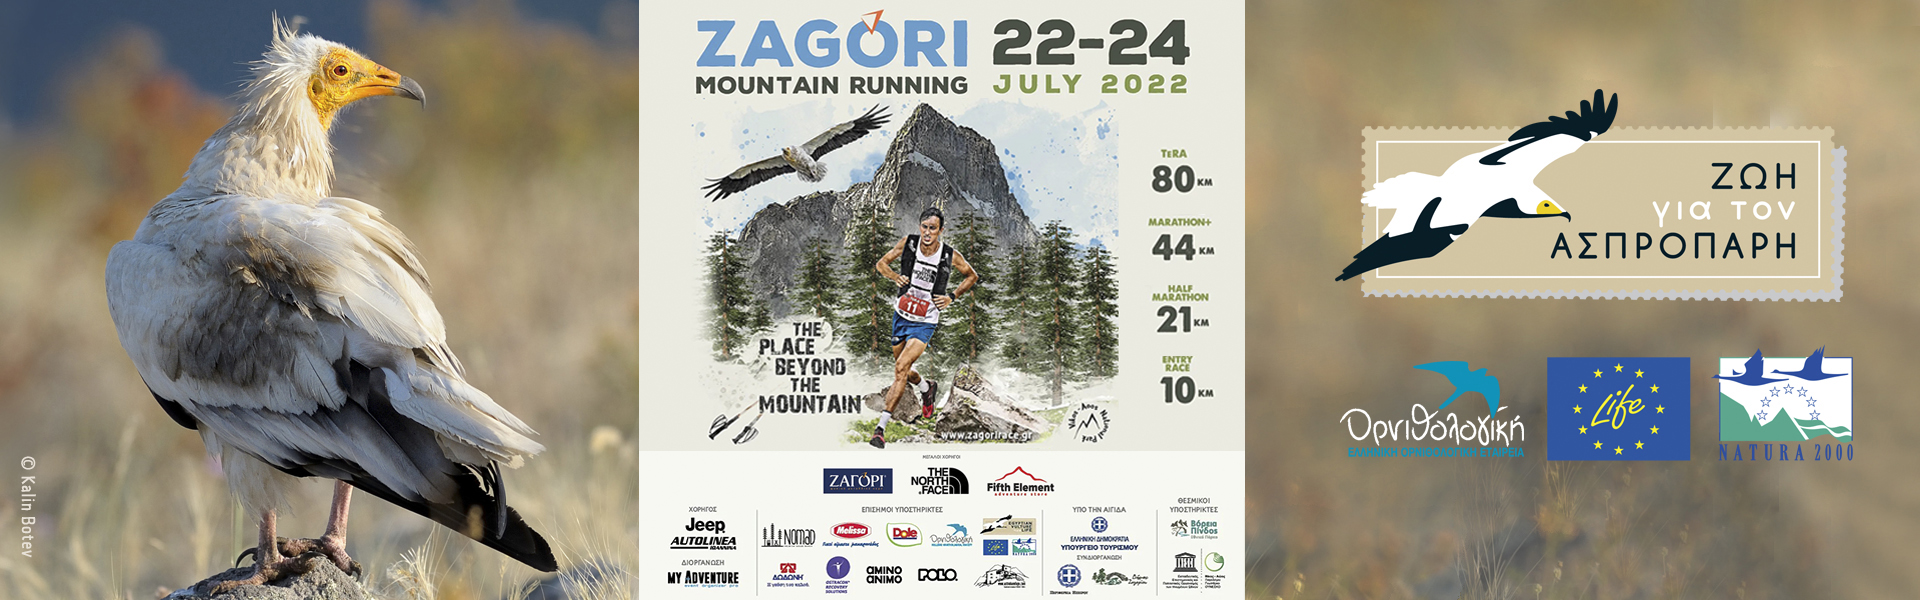 Ο Ασπροπάρης Στο Zagori Mountain Running 2022